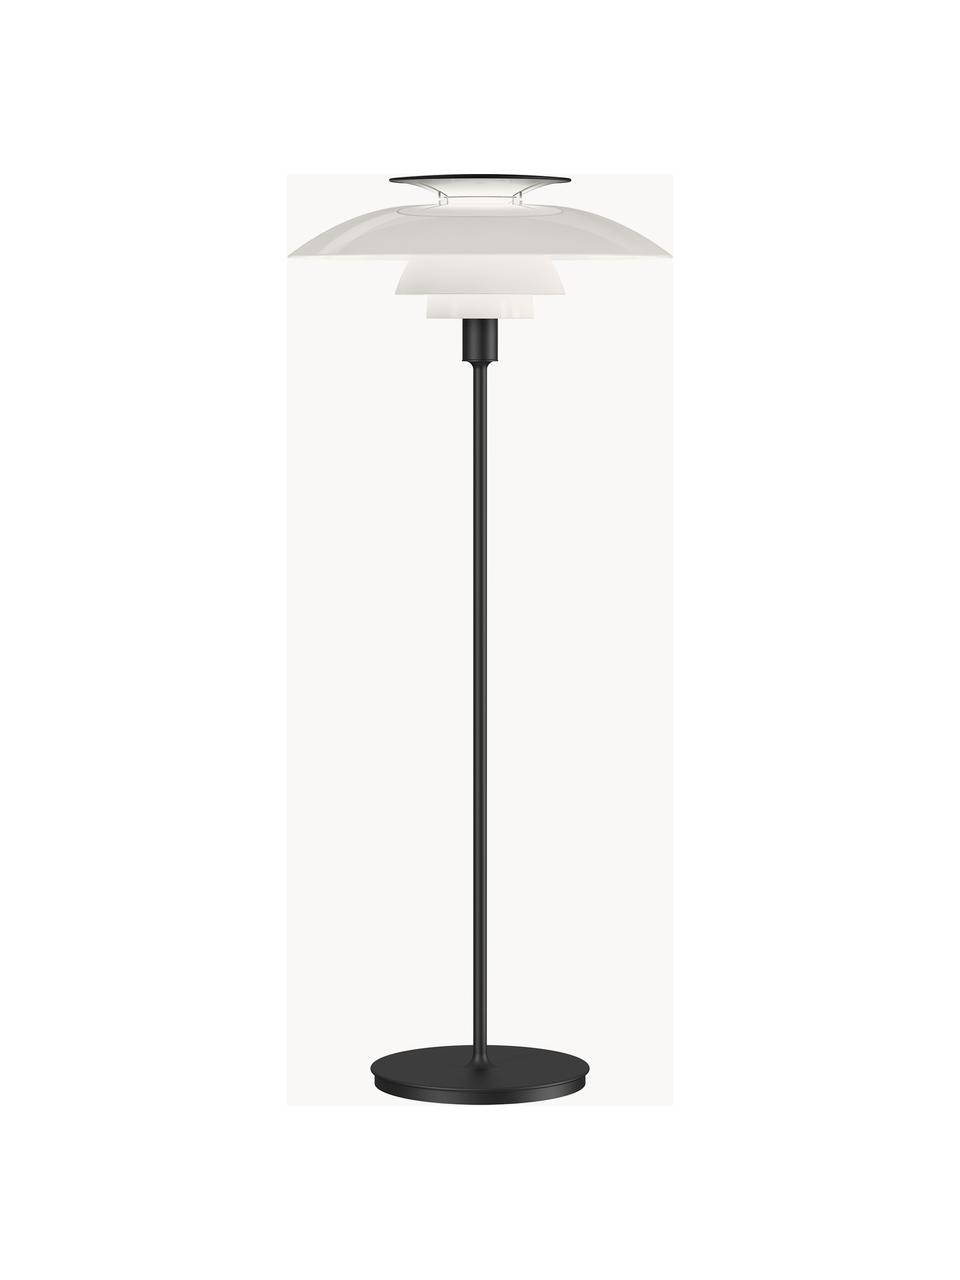 Pequeña lámpara de pie regulable PH 80, Pantalla: plexiglás, policarbonato, Estructura: acero con cubrimiento en , Cable: plástico, Negro, blanco, Al 132 cm